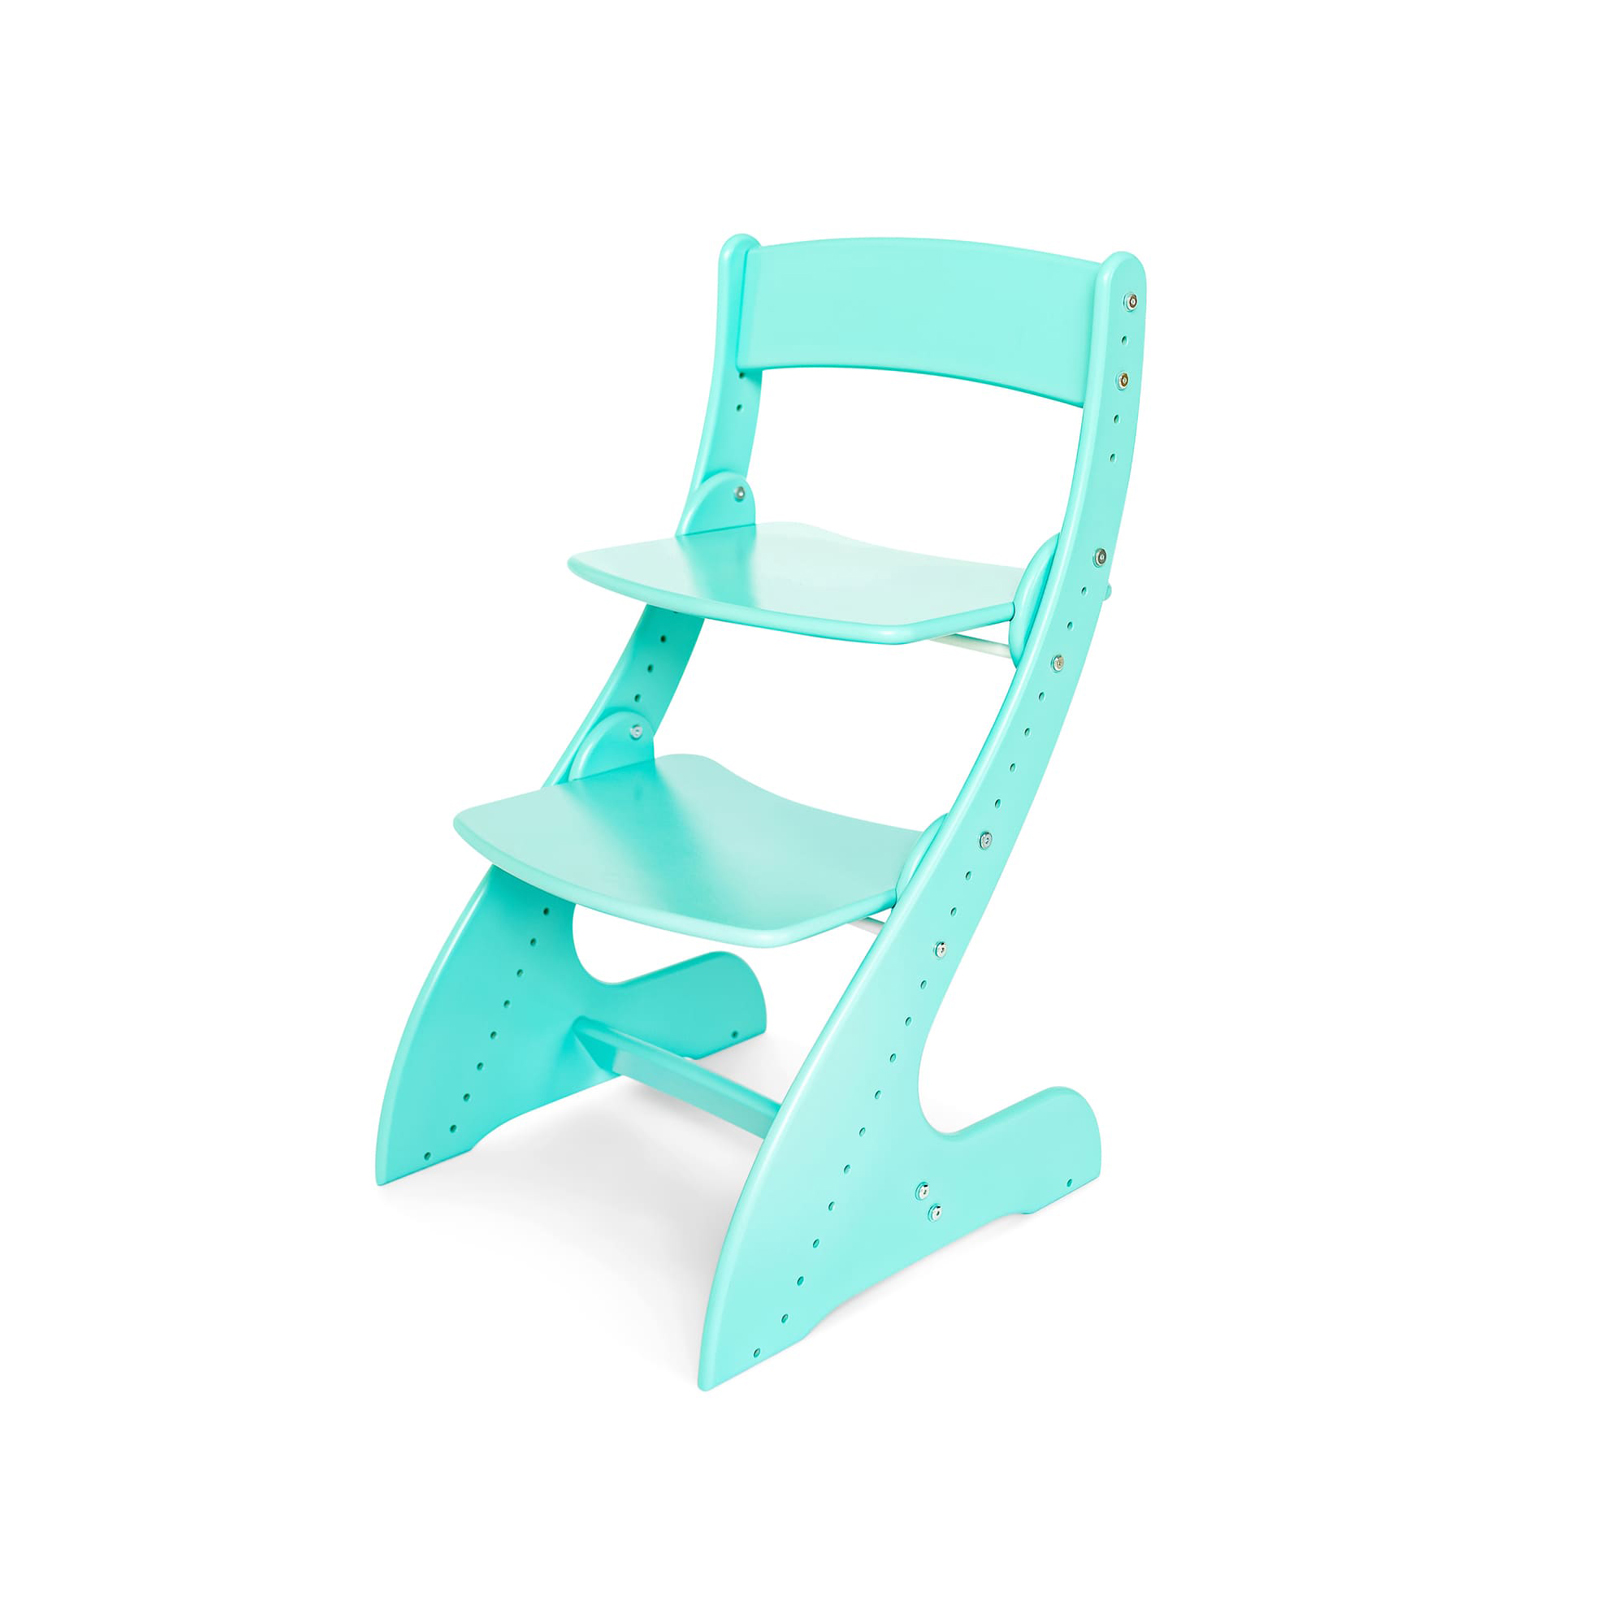 Растущий стул Павлин от МФ «Друг Кузя» - Регулировка: высота сидения, высота спинки, высота подножки